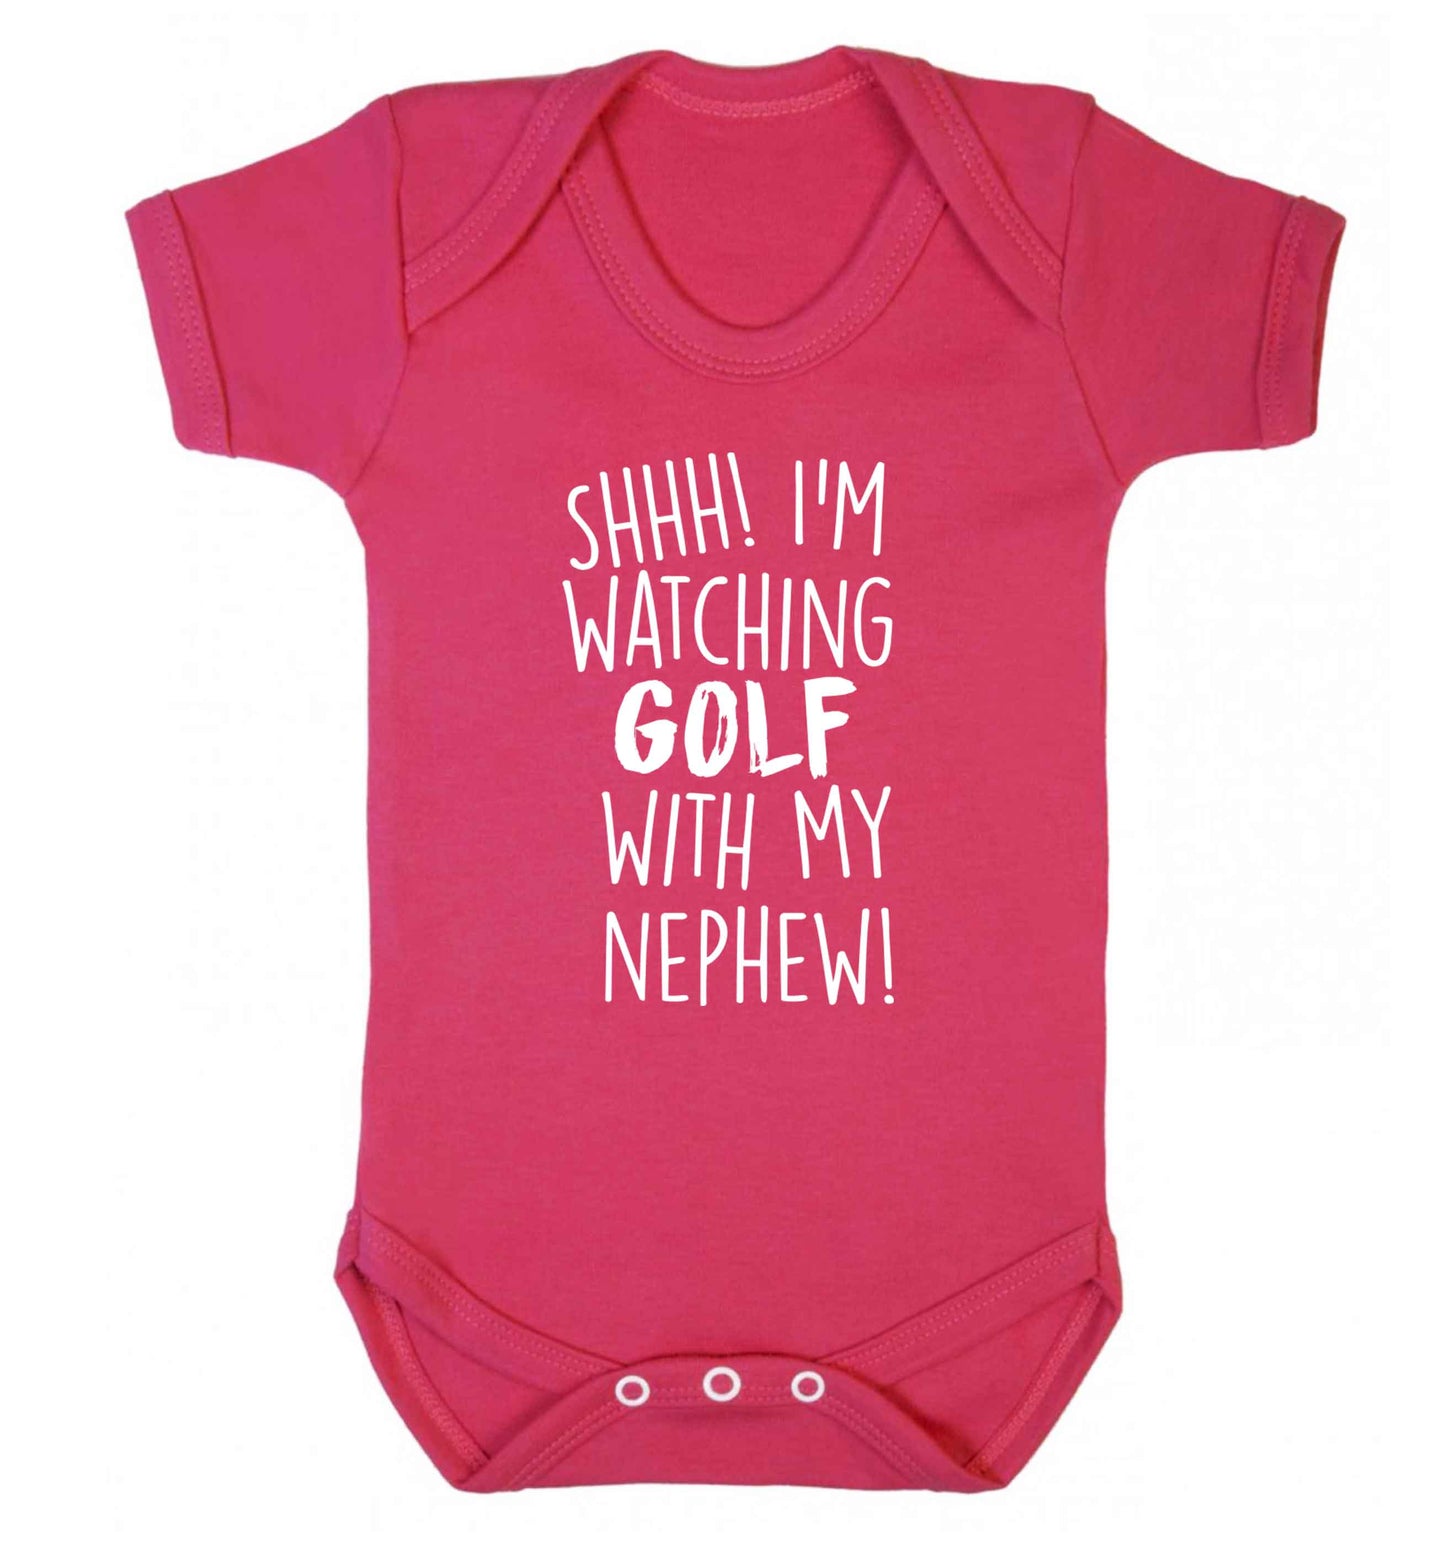 Shh I'm watching golf with my nephew Baby Vest dark pink 18-24 months